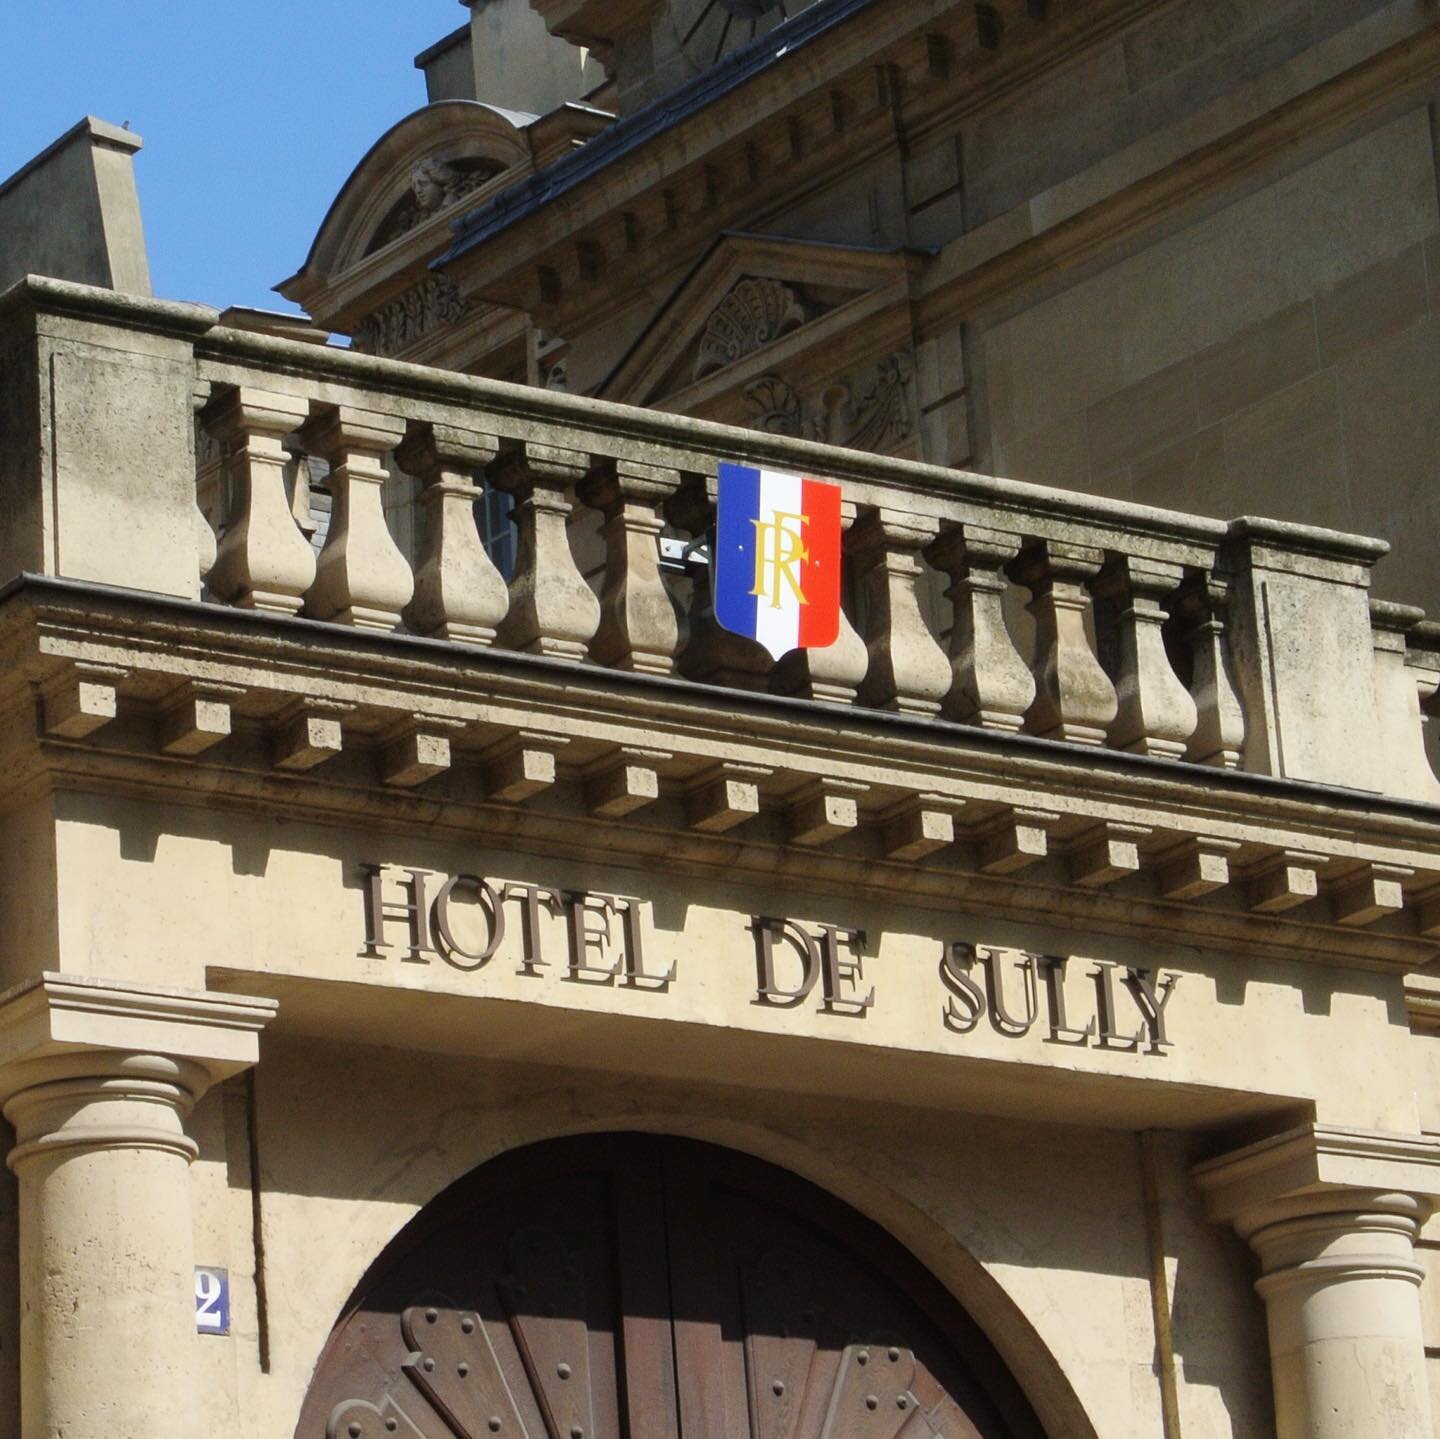 Paris-Hôtel-de-Sully-Entrance-Parisology.jpg